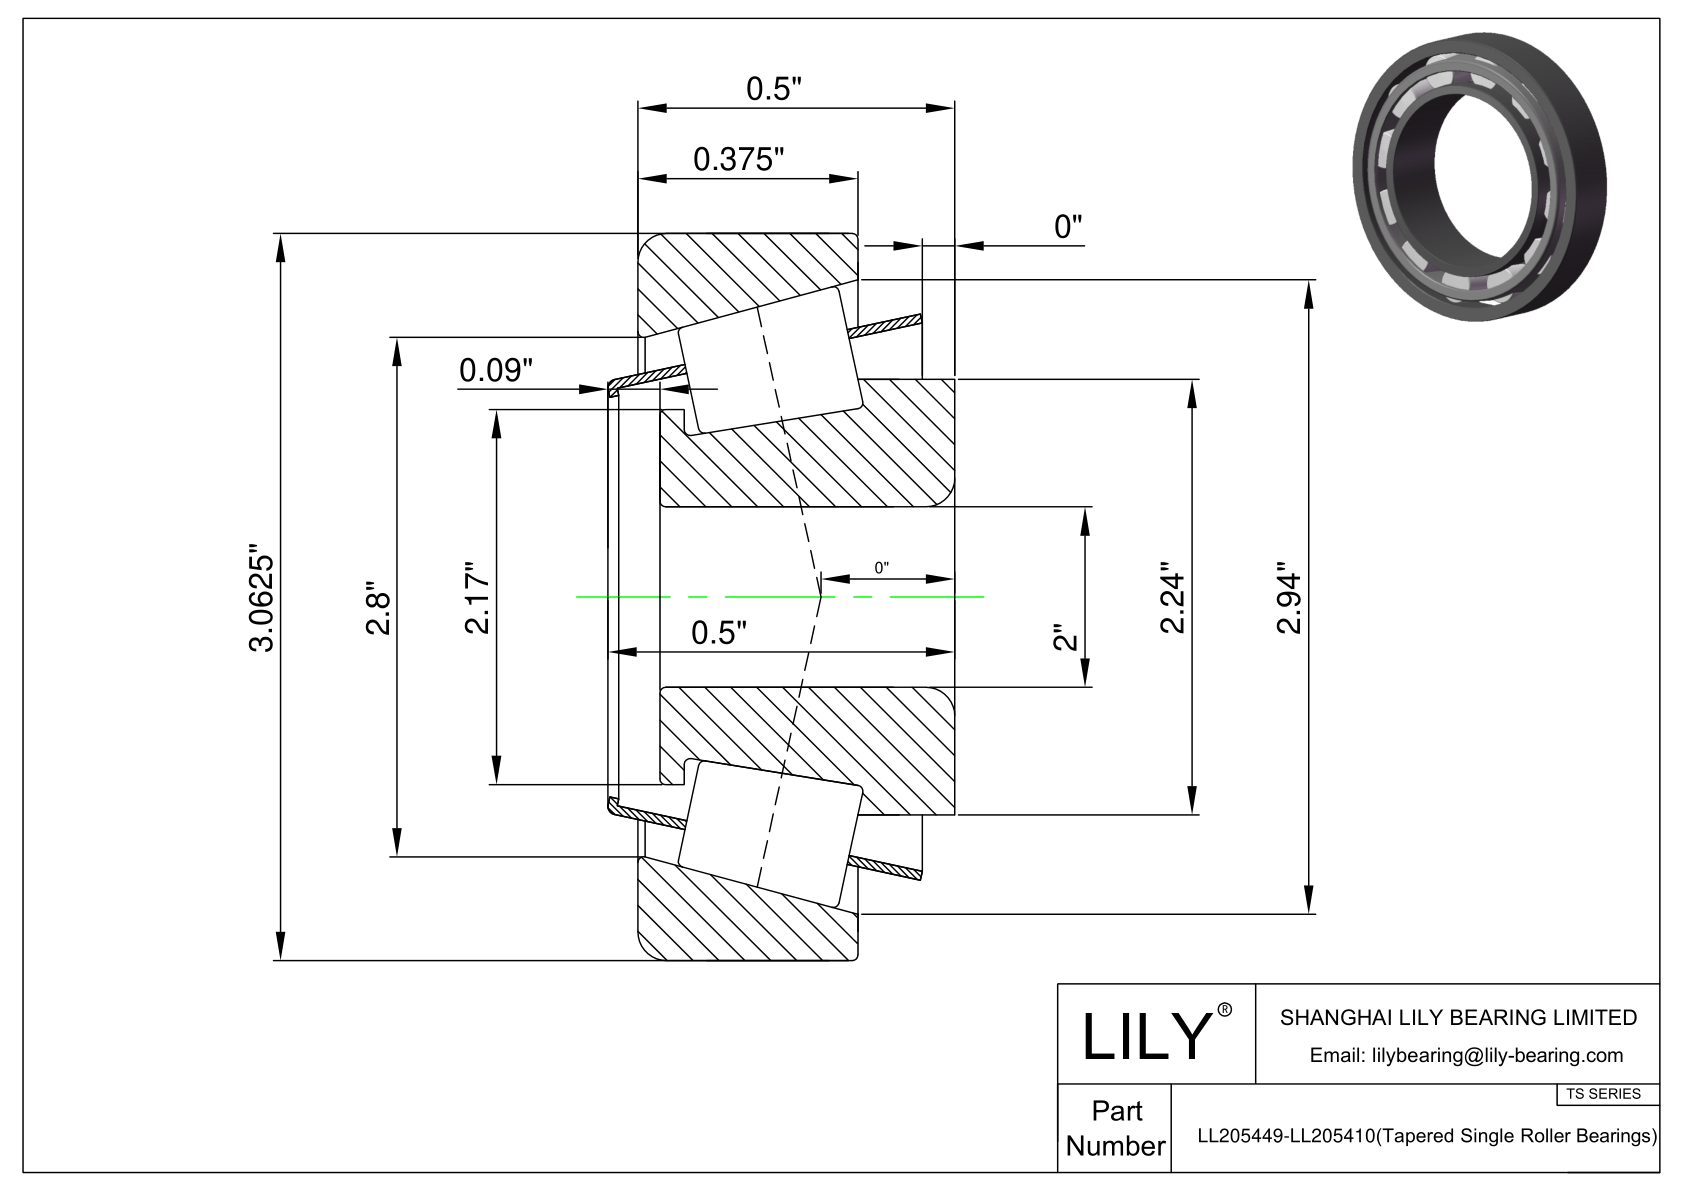 LL205449-LL205410 TS系列(圆锥单滚子轴承)(英制) CAD图形